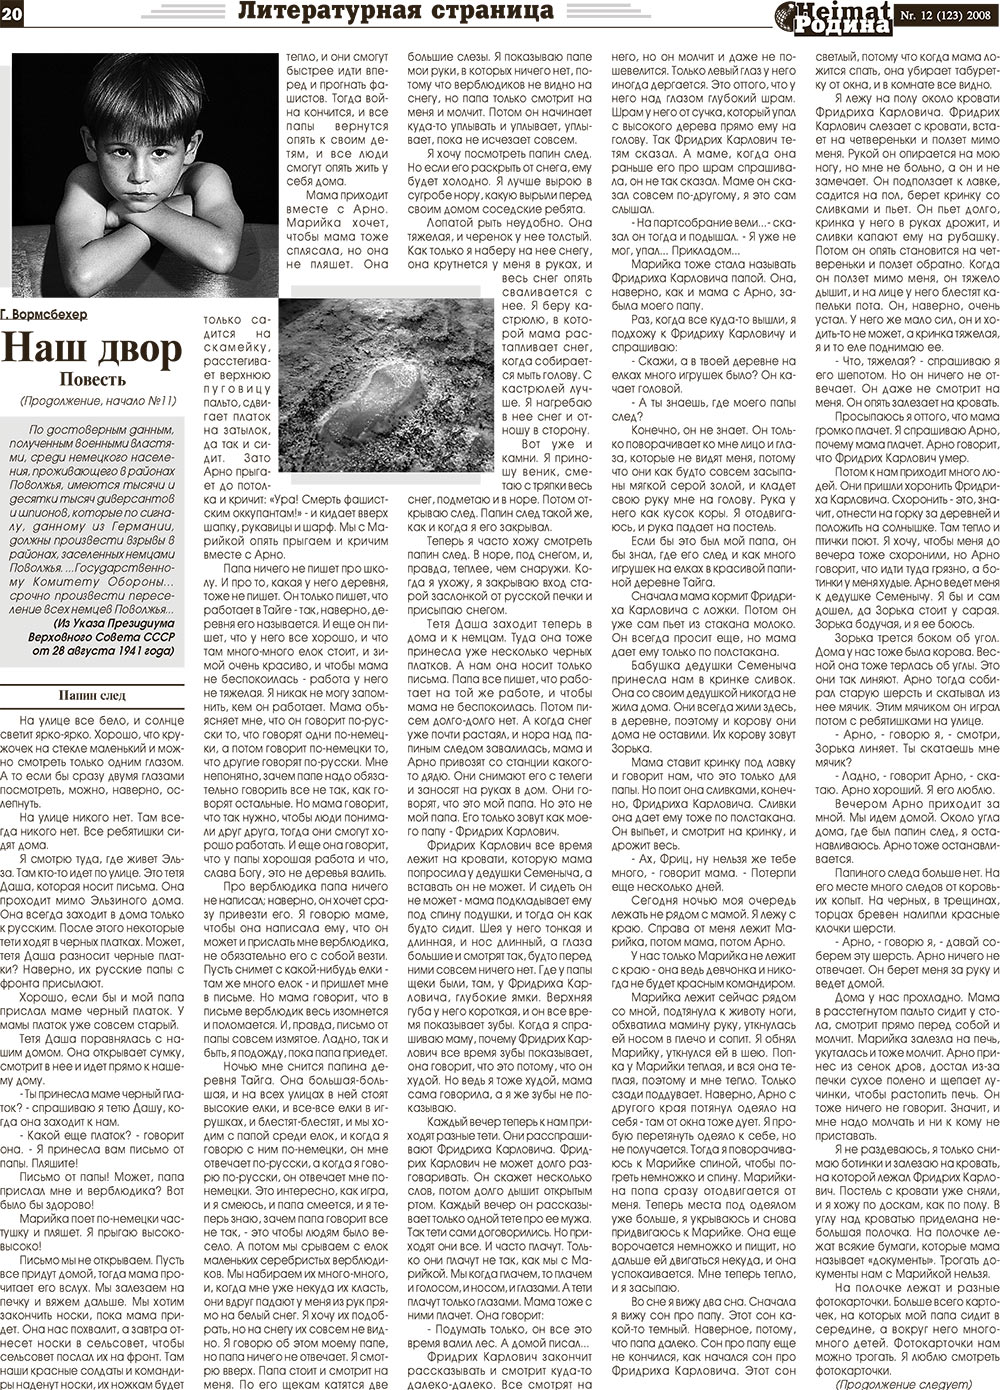 Heimat-Родина (газета). 2008 год, номер 12, стр. 20